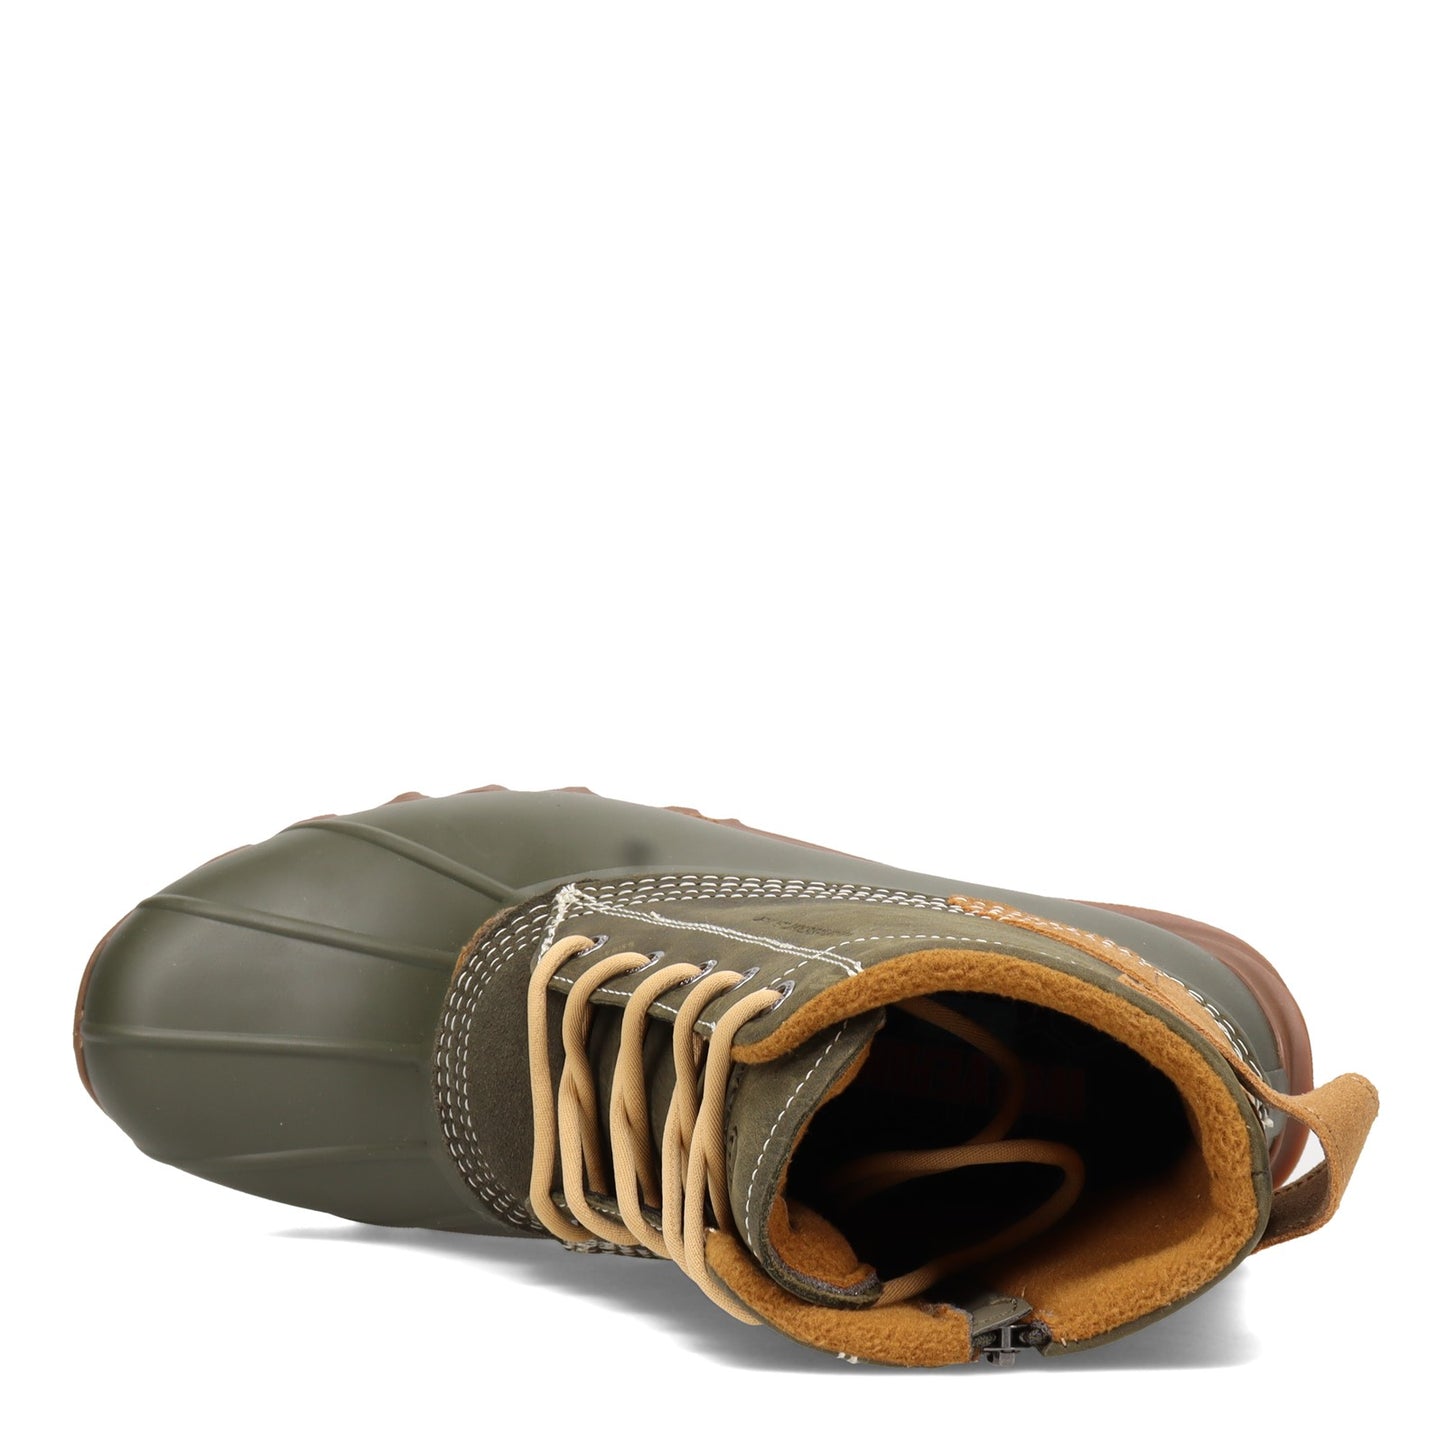 Peltz Shoes  Men's Wolverine Boots Torrent Waterproof Duck Boot OLIVE W880221